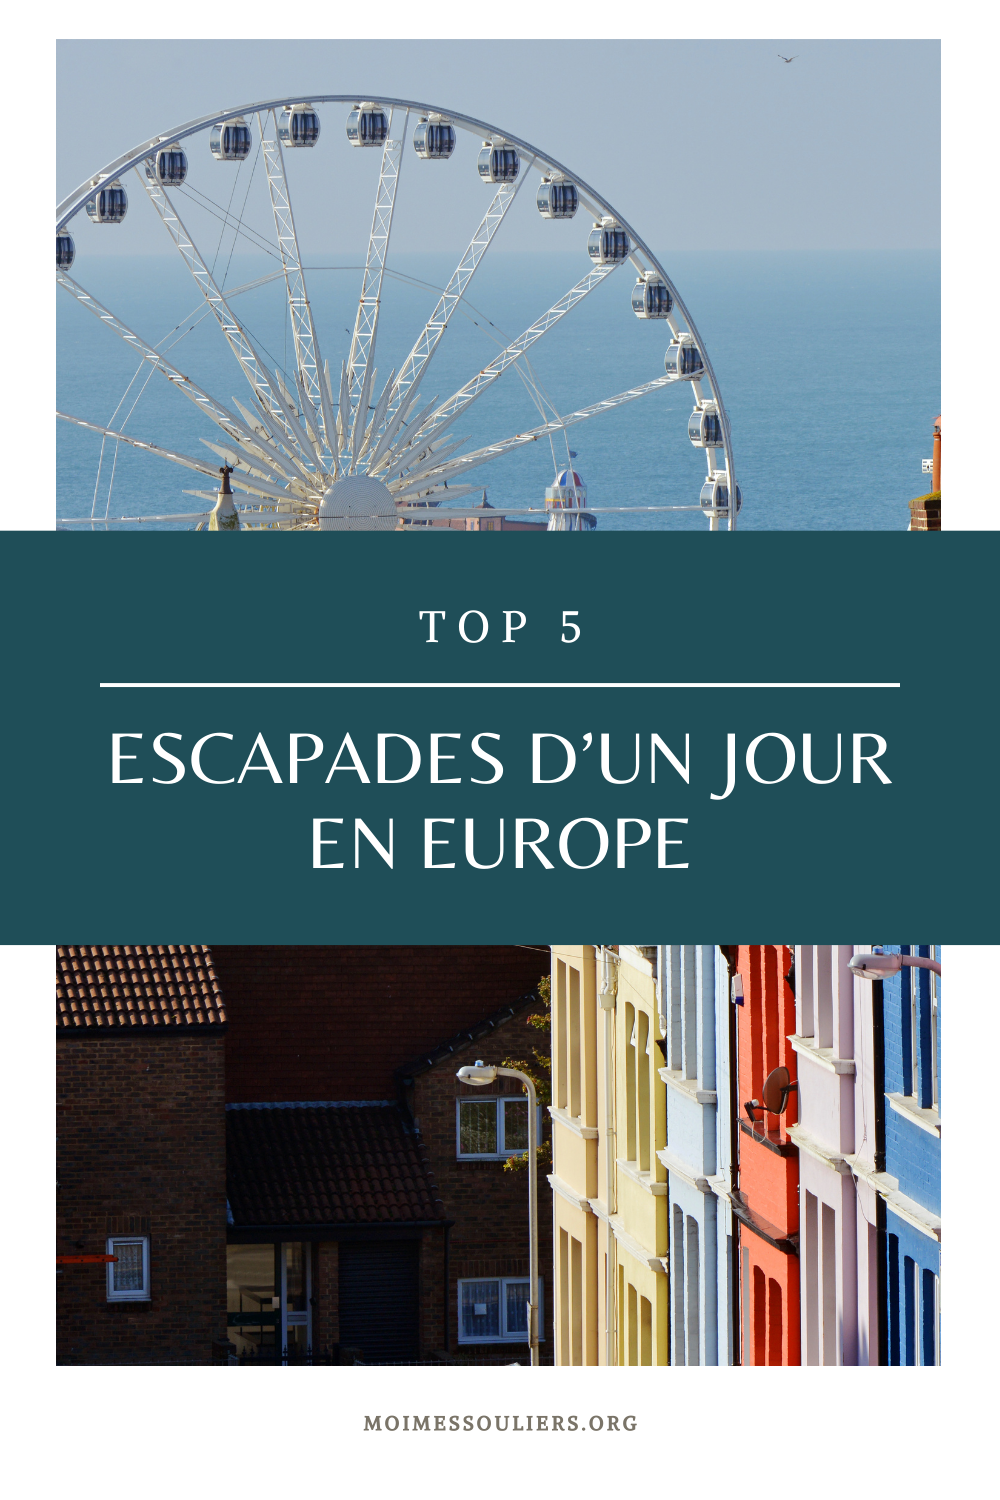 Top 5 escapades d'un jour en Europe